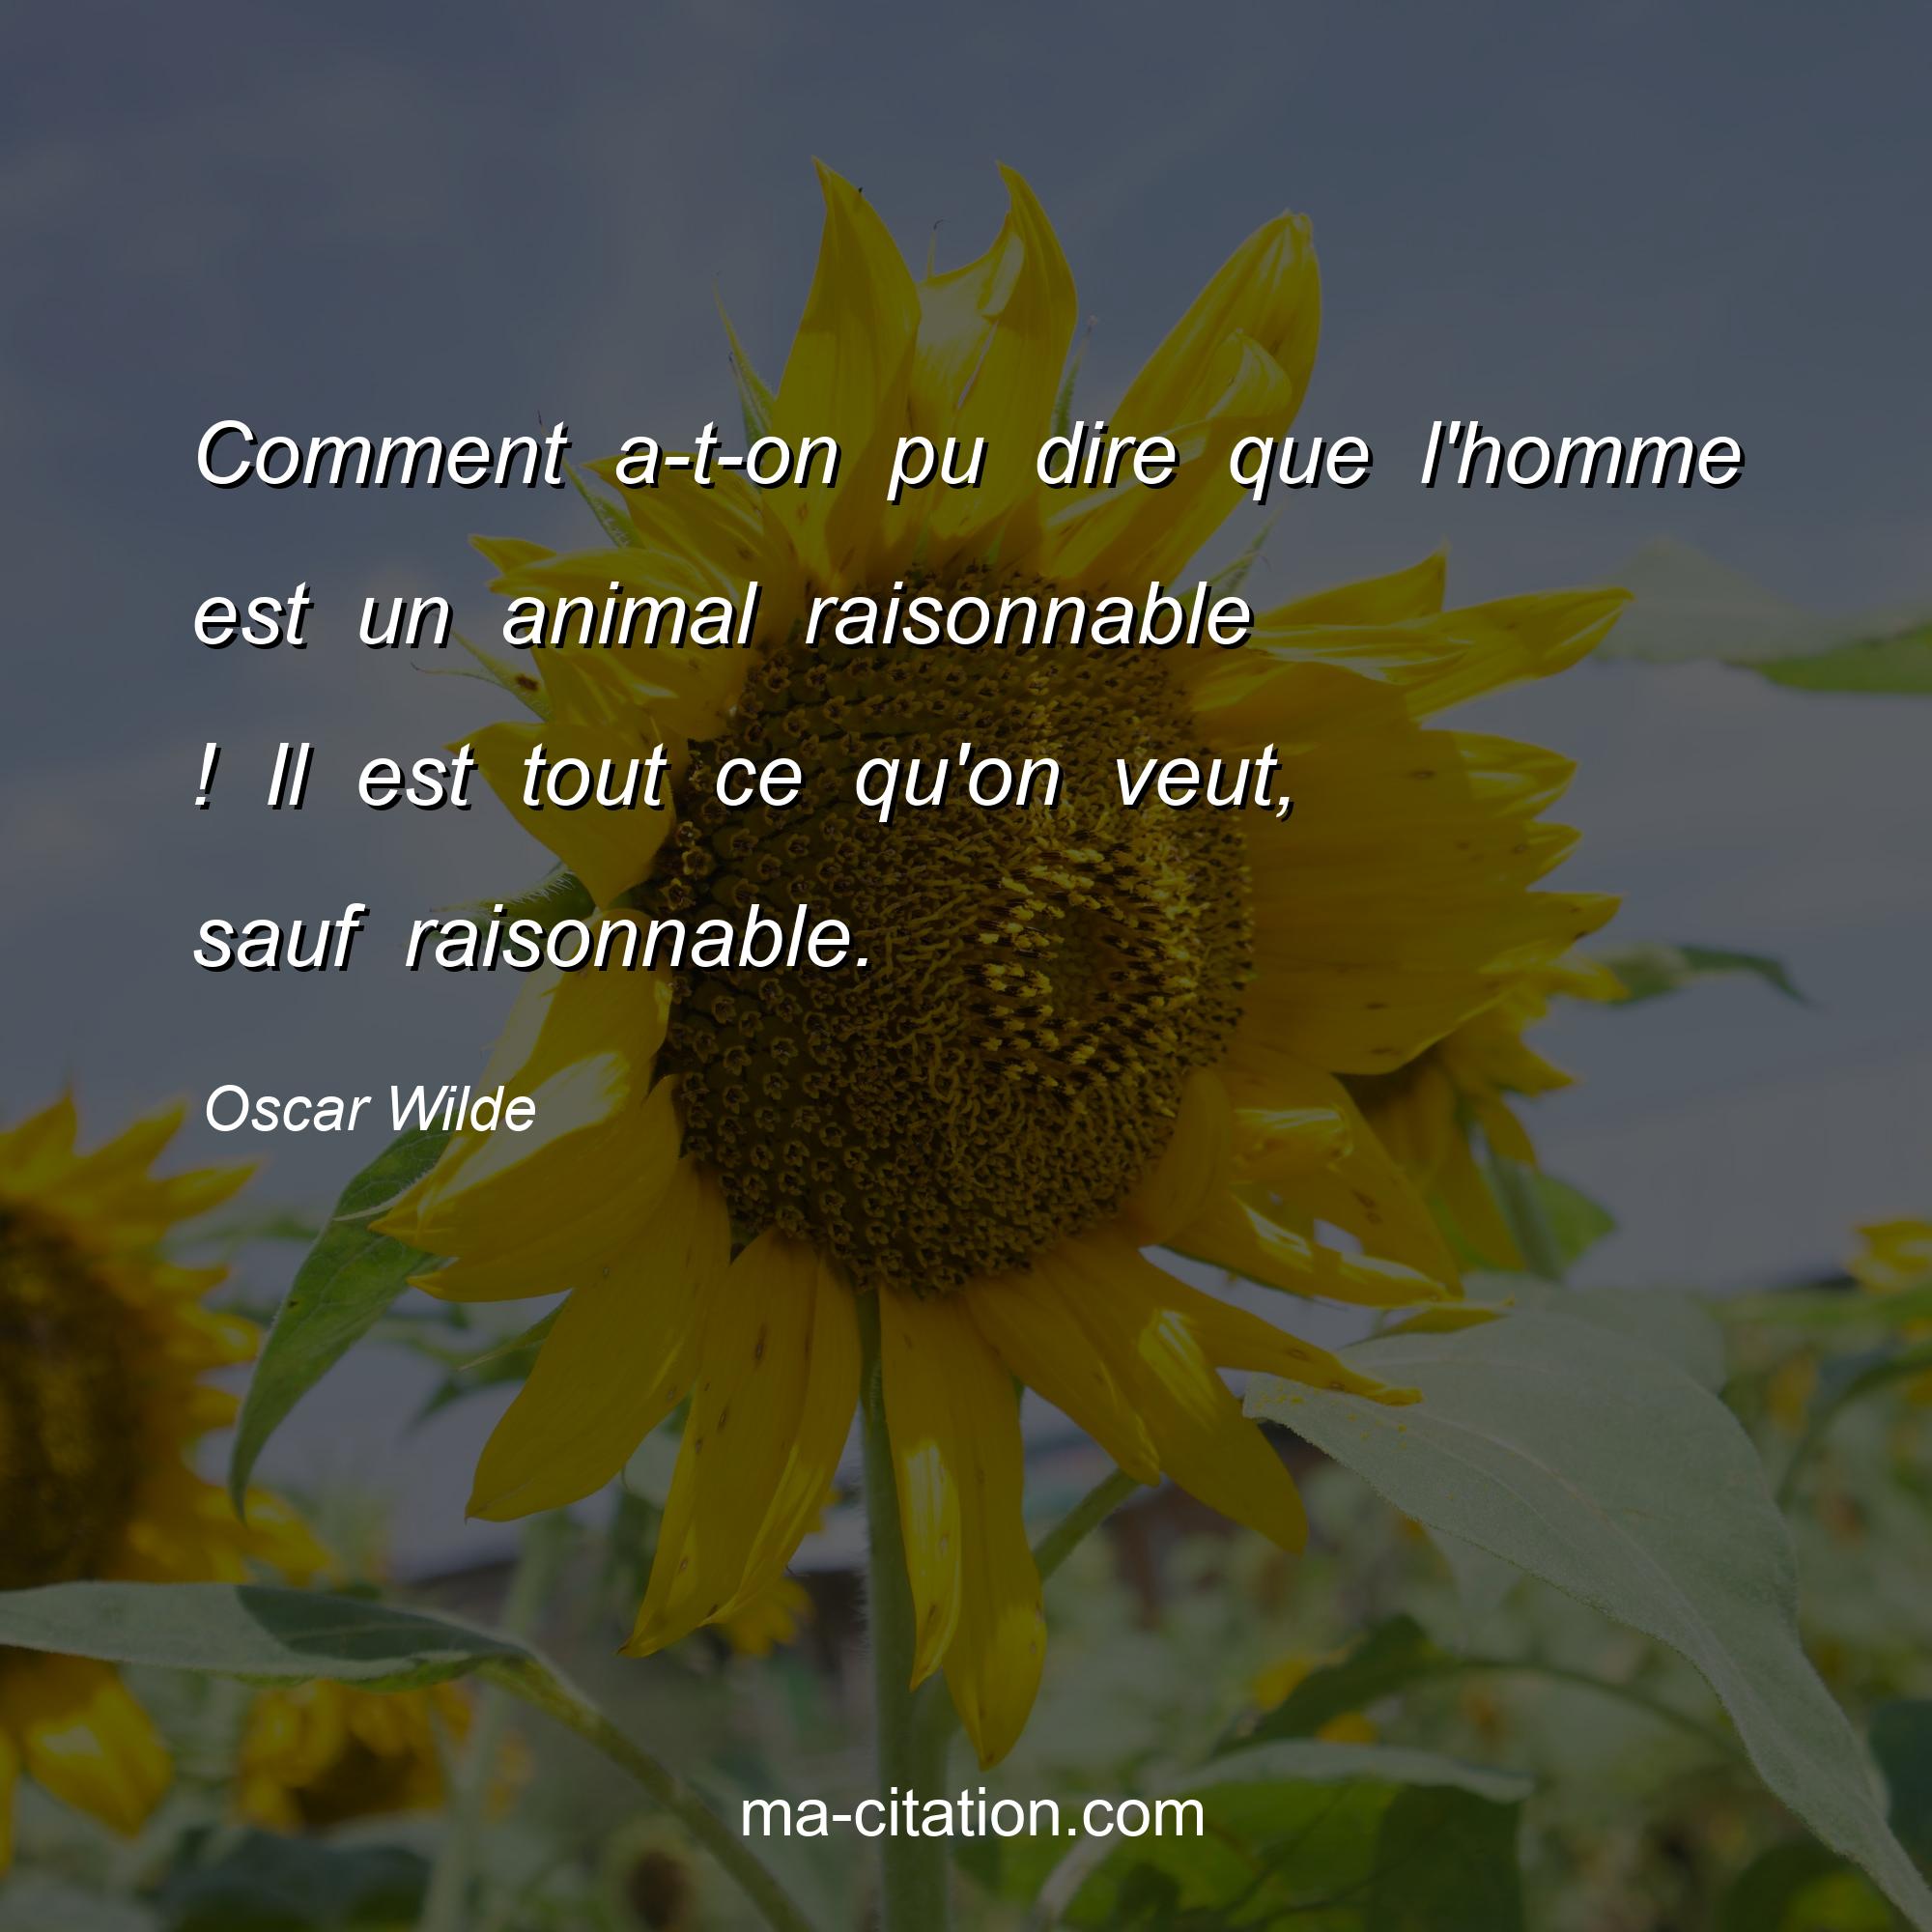 Oscar Wilde : Comment a-t-on pu dire que l'homme est un animal raisonnable ! Il est tout ce qu'on veut, sauf raisonnable.